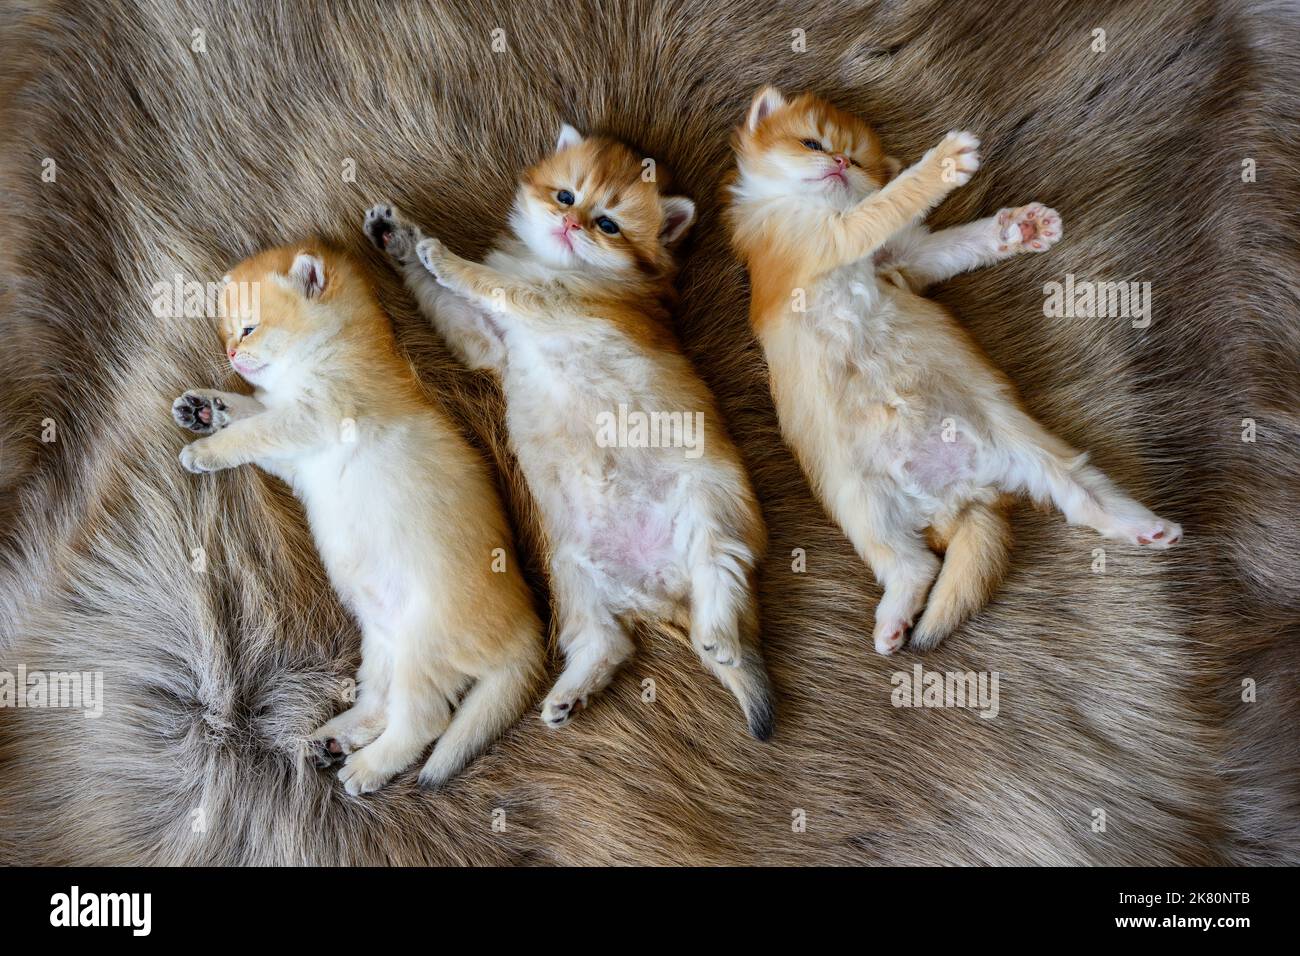 Mehrere Kätzchen lagen auf ihren Mägen auf einem braunen Wollteppich, oben und aus der Nähe. Britische Kurzhaar-Katze, golden, reinrassig, ruhender Kater Stockfoto